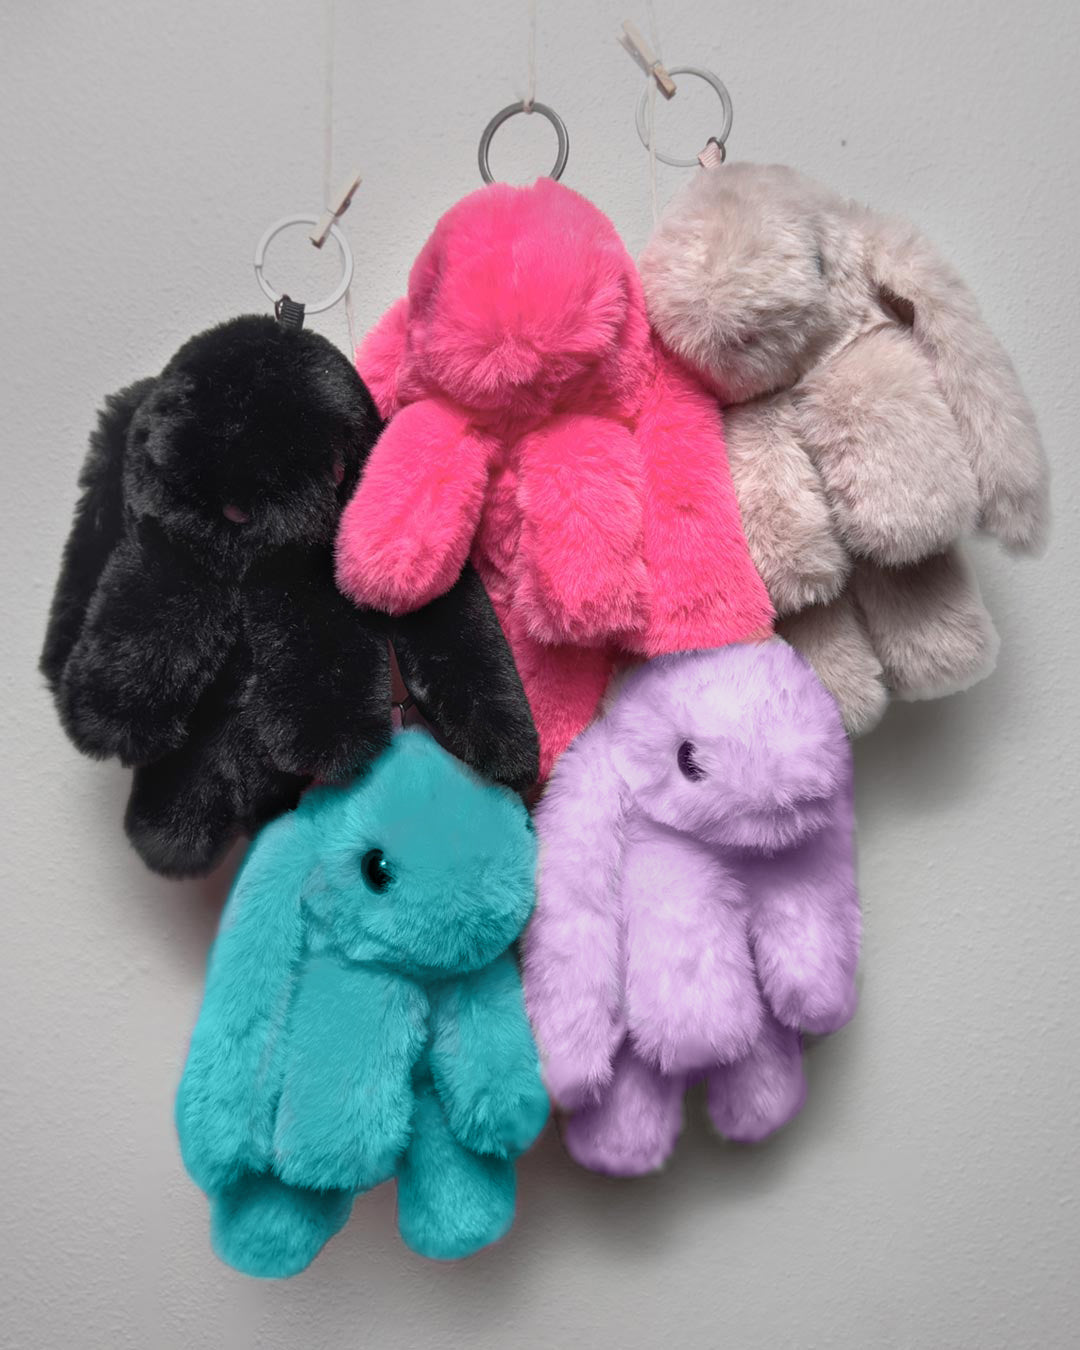 Faux Fur Backpack - Light pink/rabbit - Kids